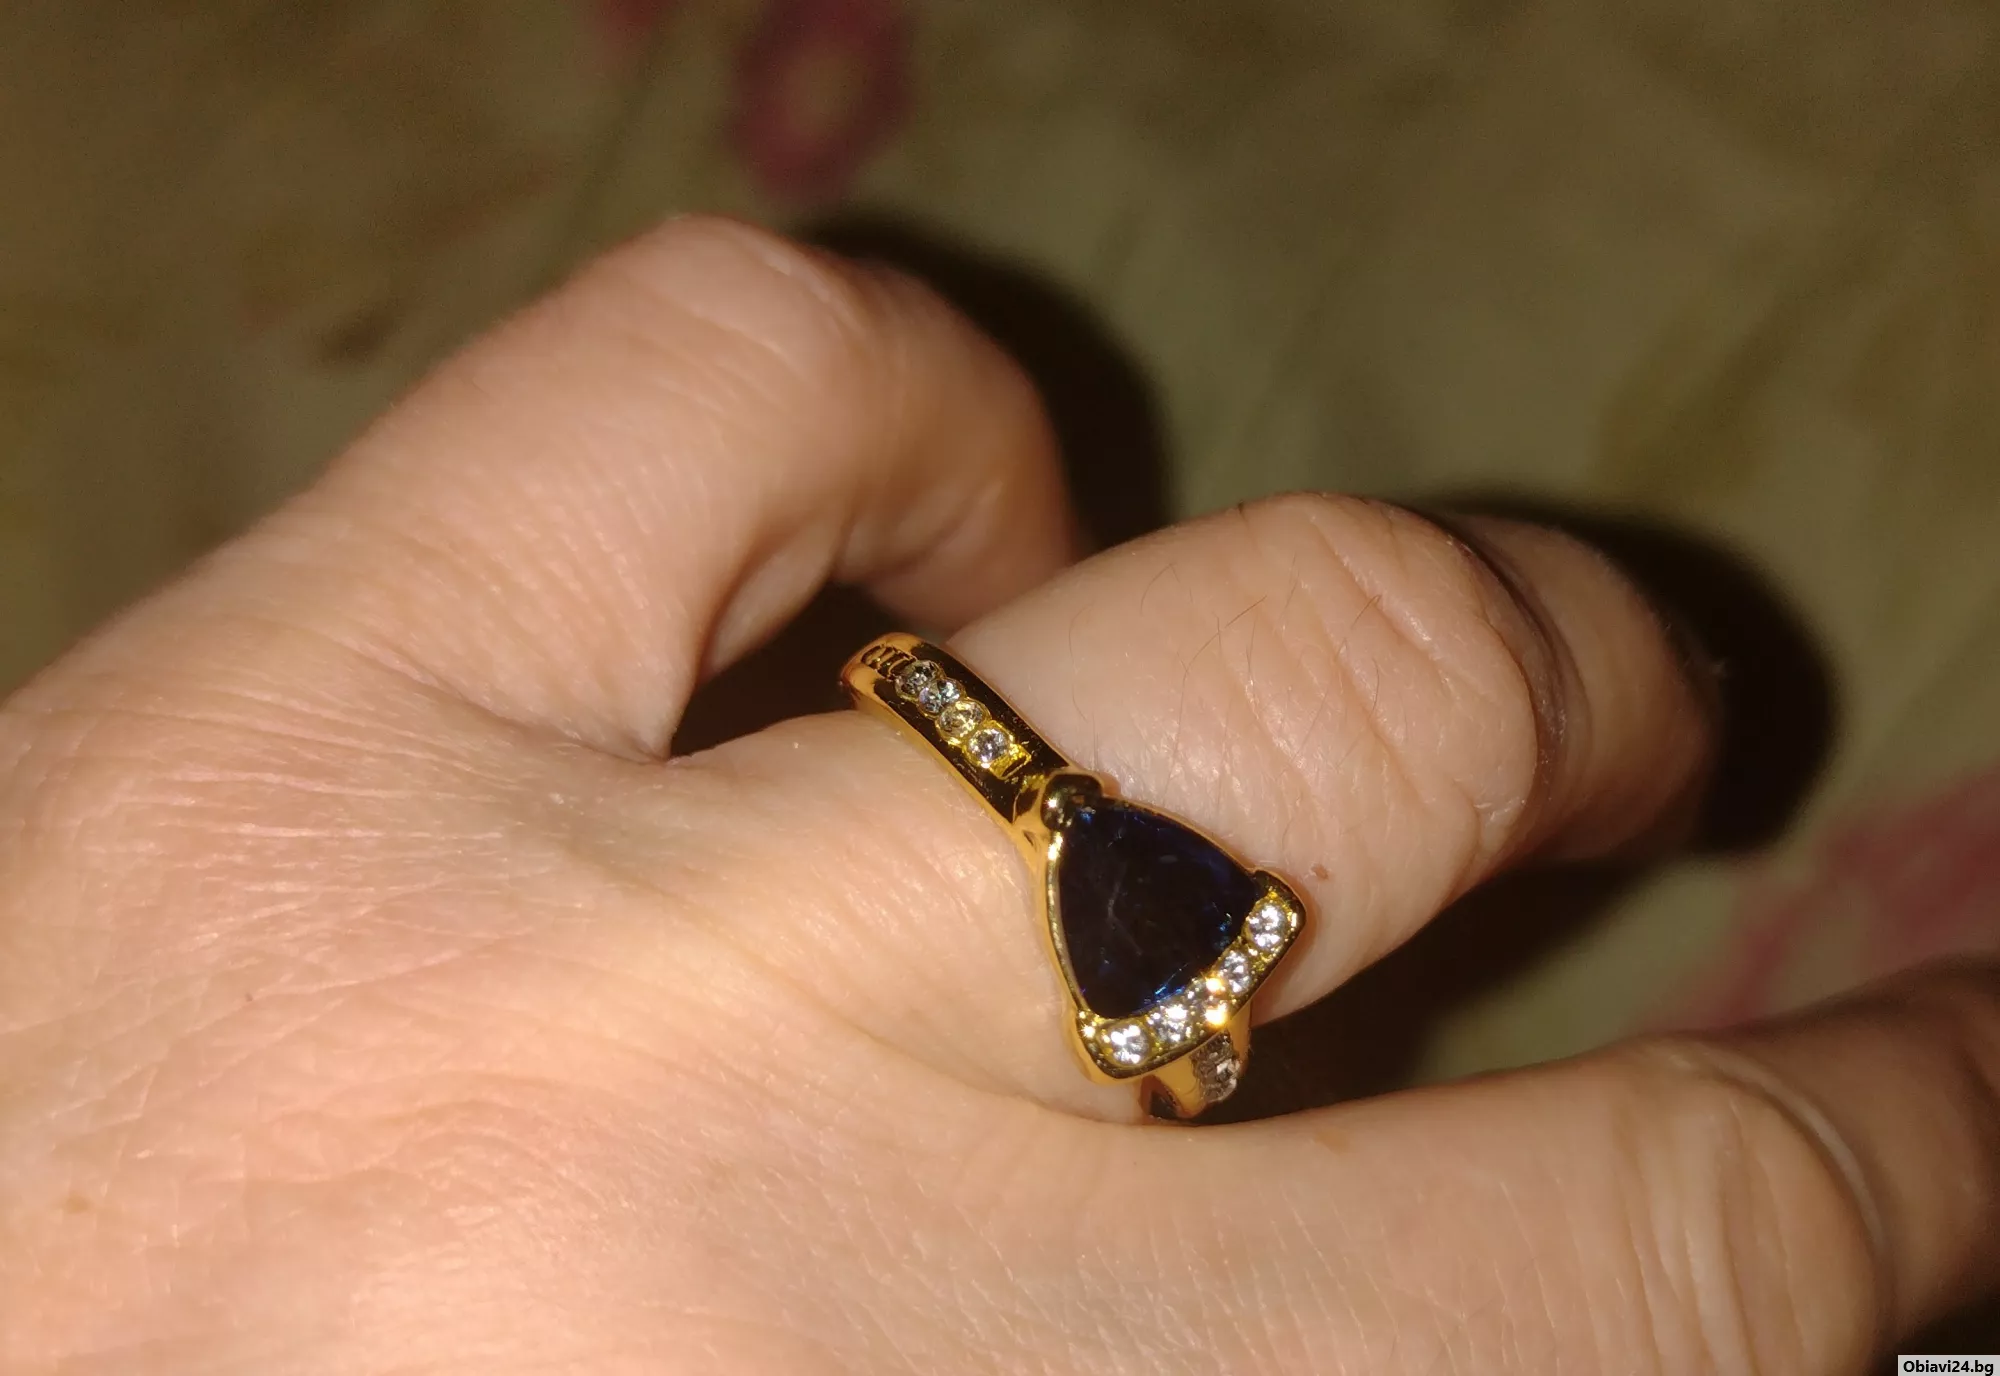 Нежен пръстен с циркон и кристал - obiavi24.bg